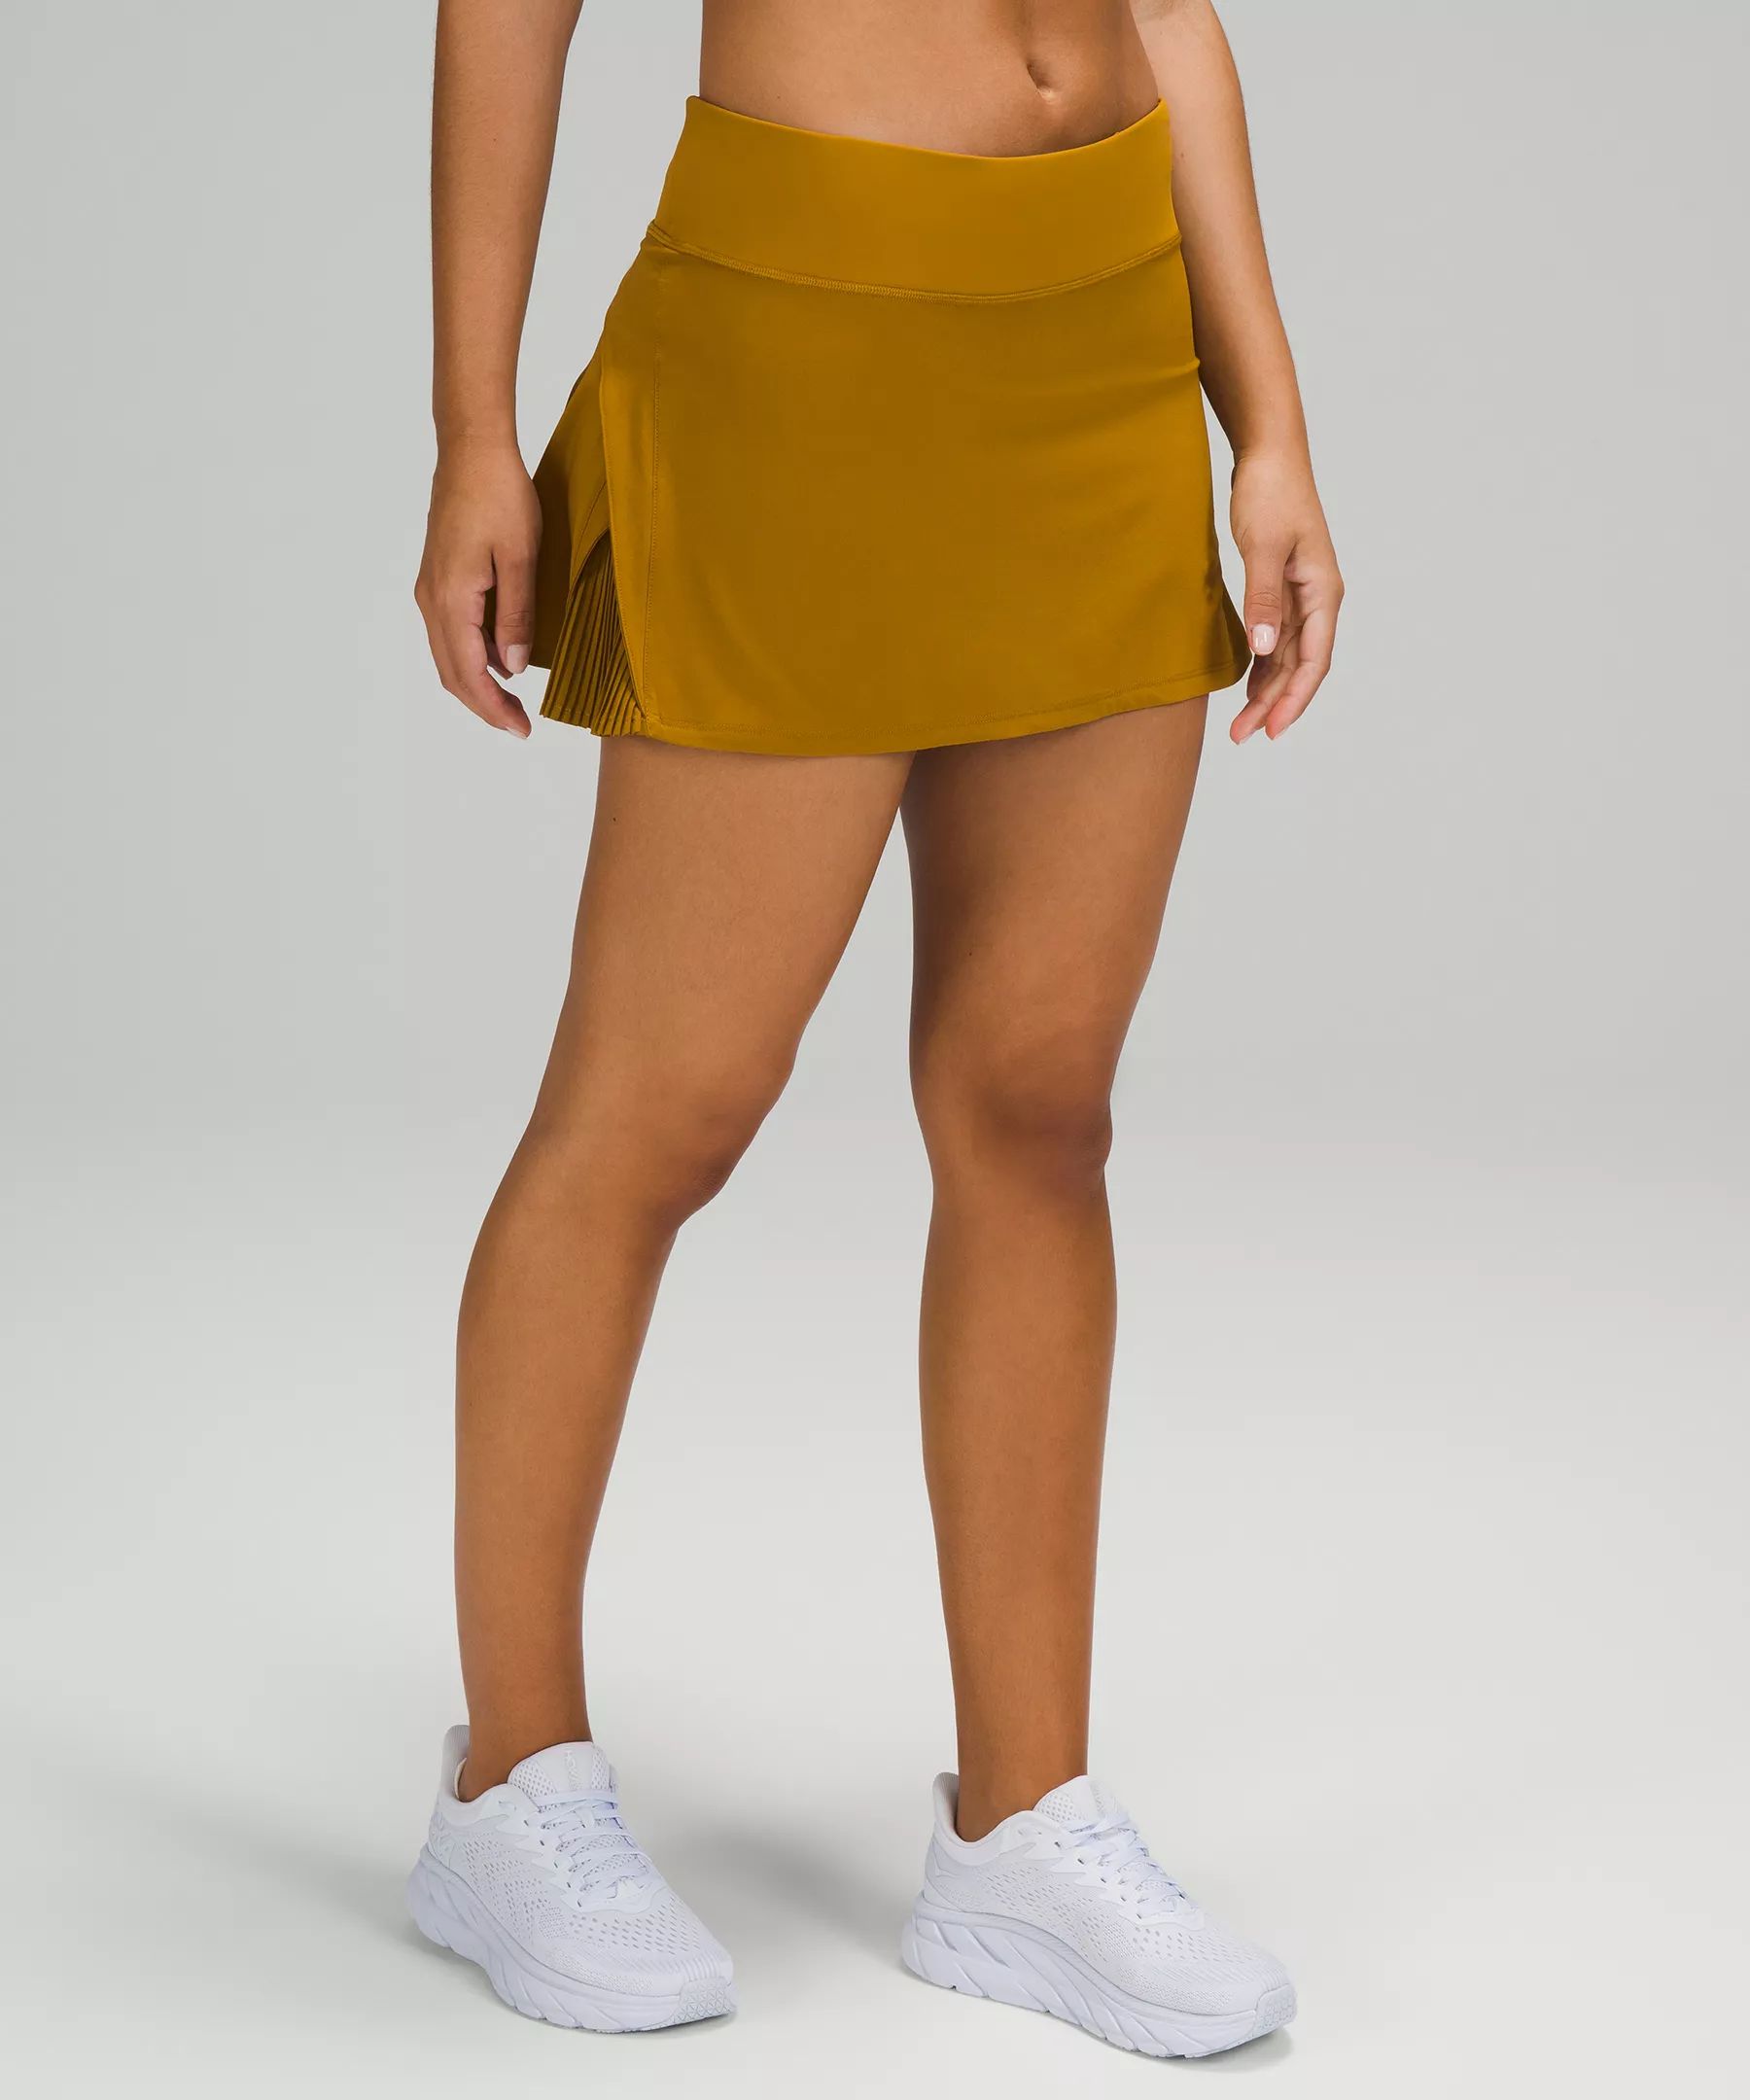 Play Off the Pleats Mid-Rise Skirt | Lululemon (US)